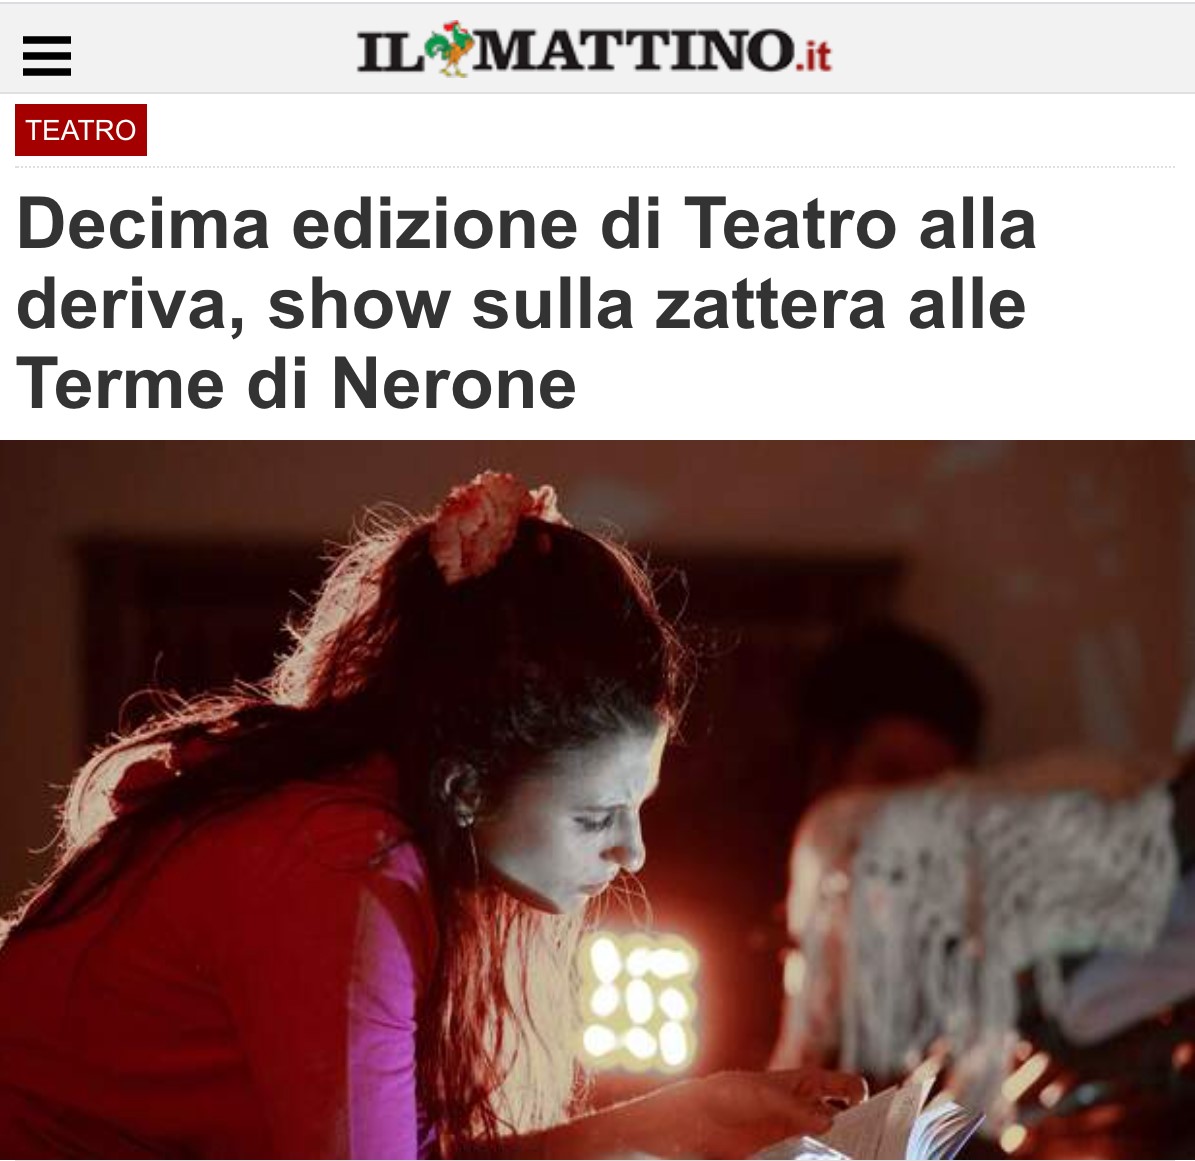 NEACO - STAMPA - Decima edizione di Teatro alla deriva, show sulla zattera alle Terme di Nerone